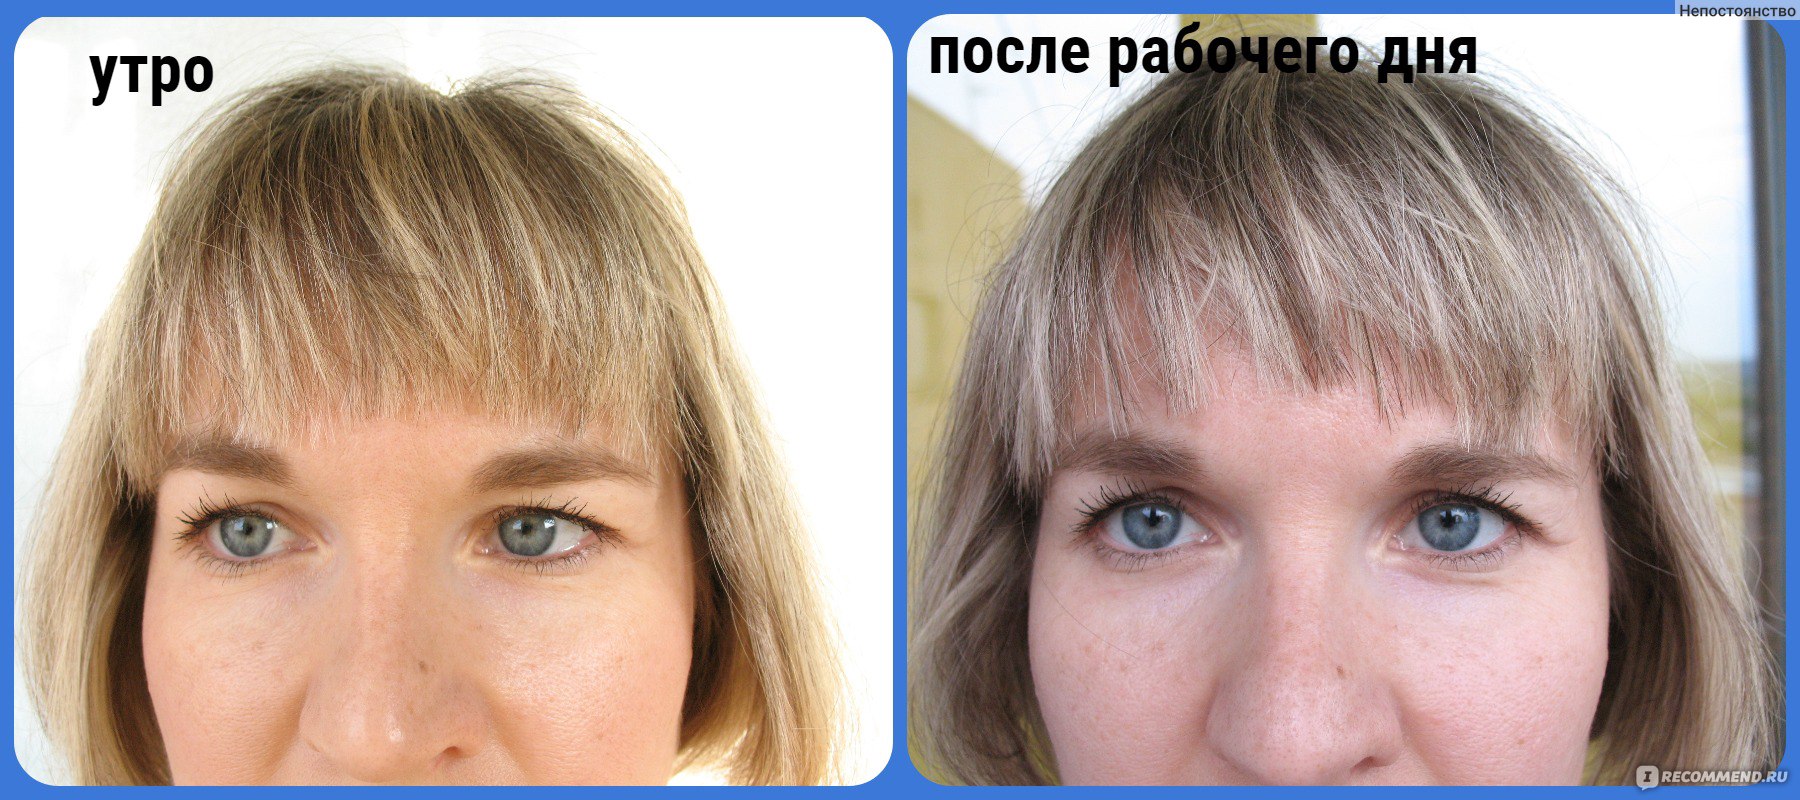 Пудра для объема волос отзывы с фото до и после применения